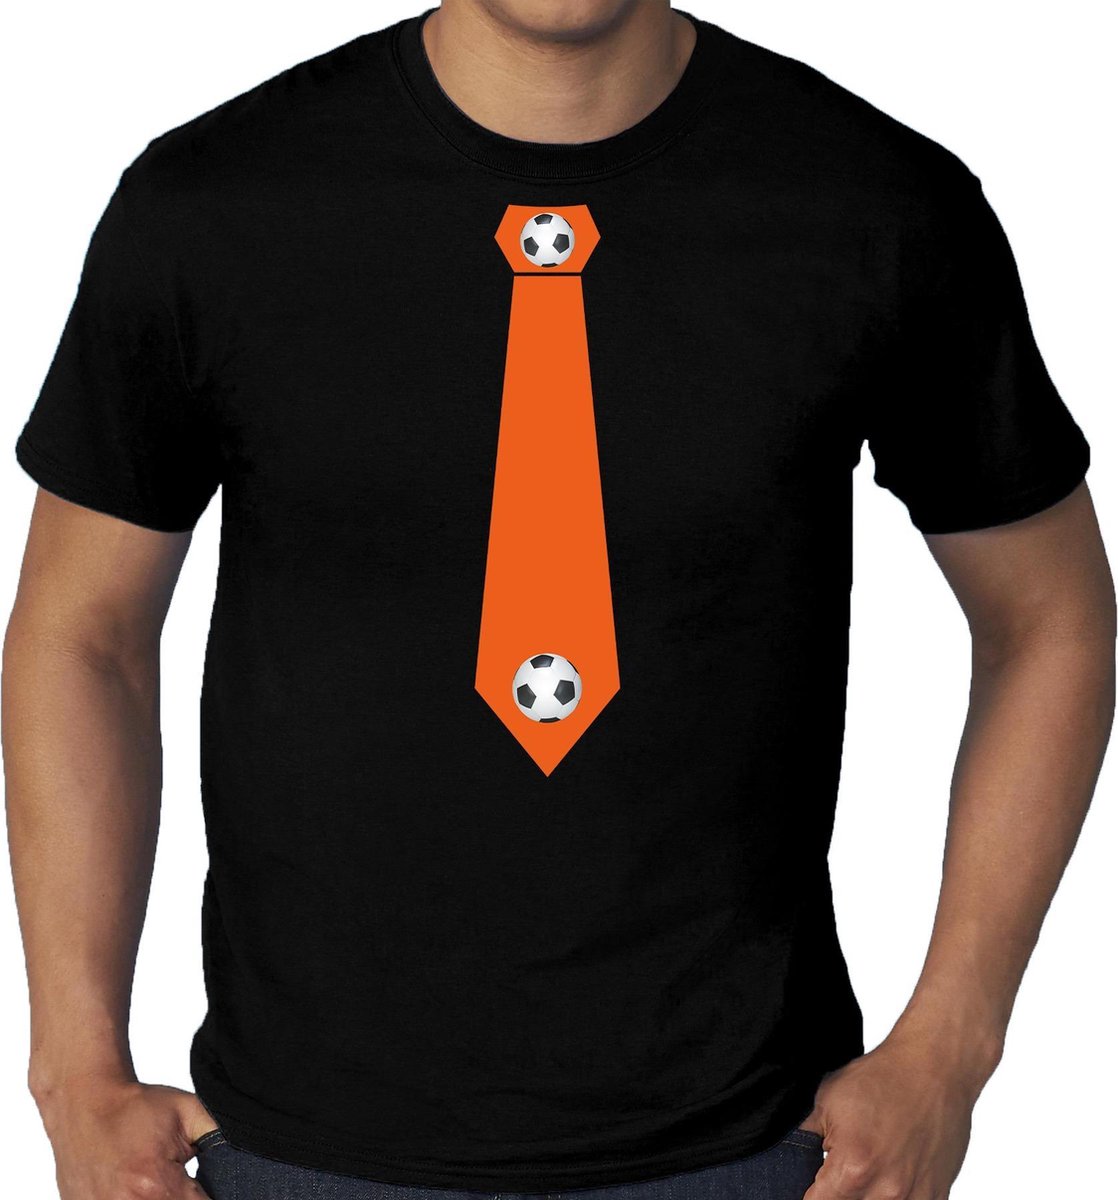 Afbeelding van product Bellatio Decorations  Grote maten zwart fan t-shirt voor heren - oranje voetbal stropdas - Holland / Nederland supporter - EK/ WK shirt / outfit XXXXL  - maat XXXXL